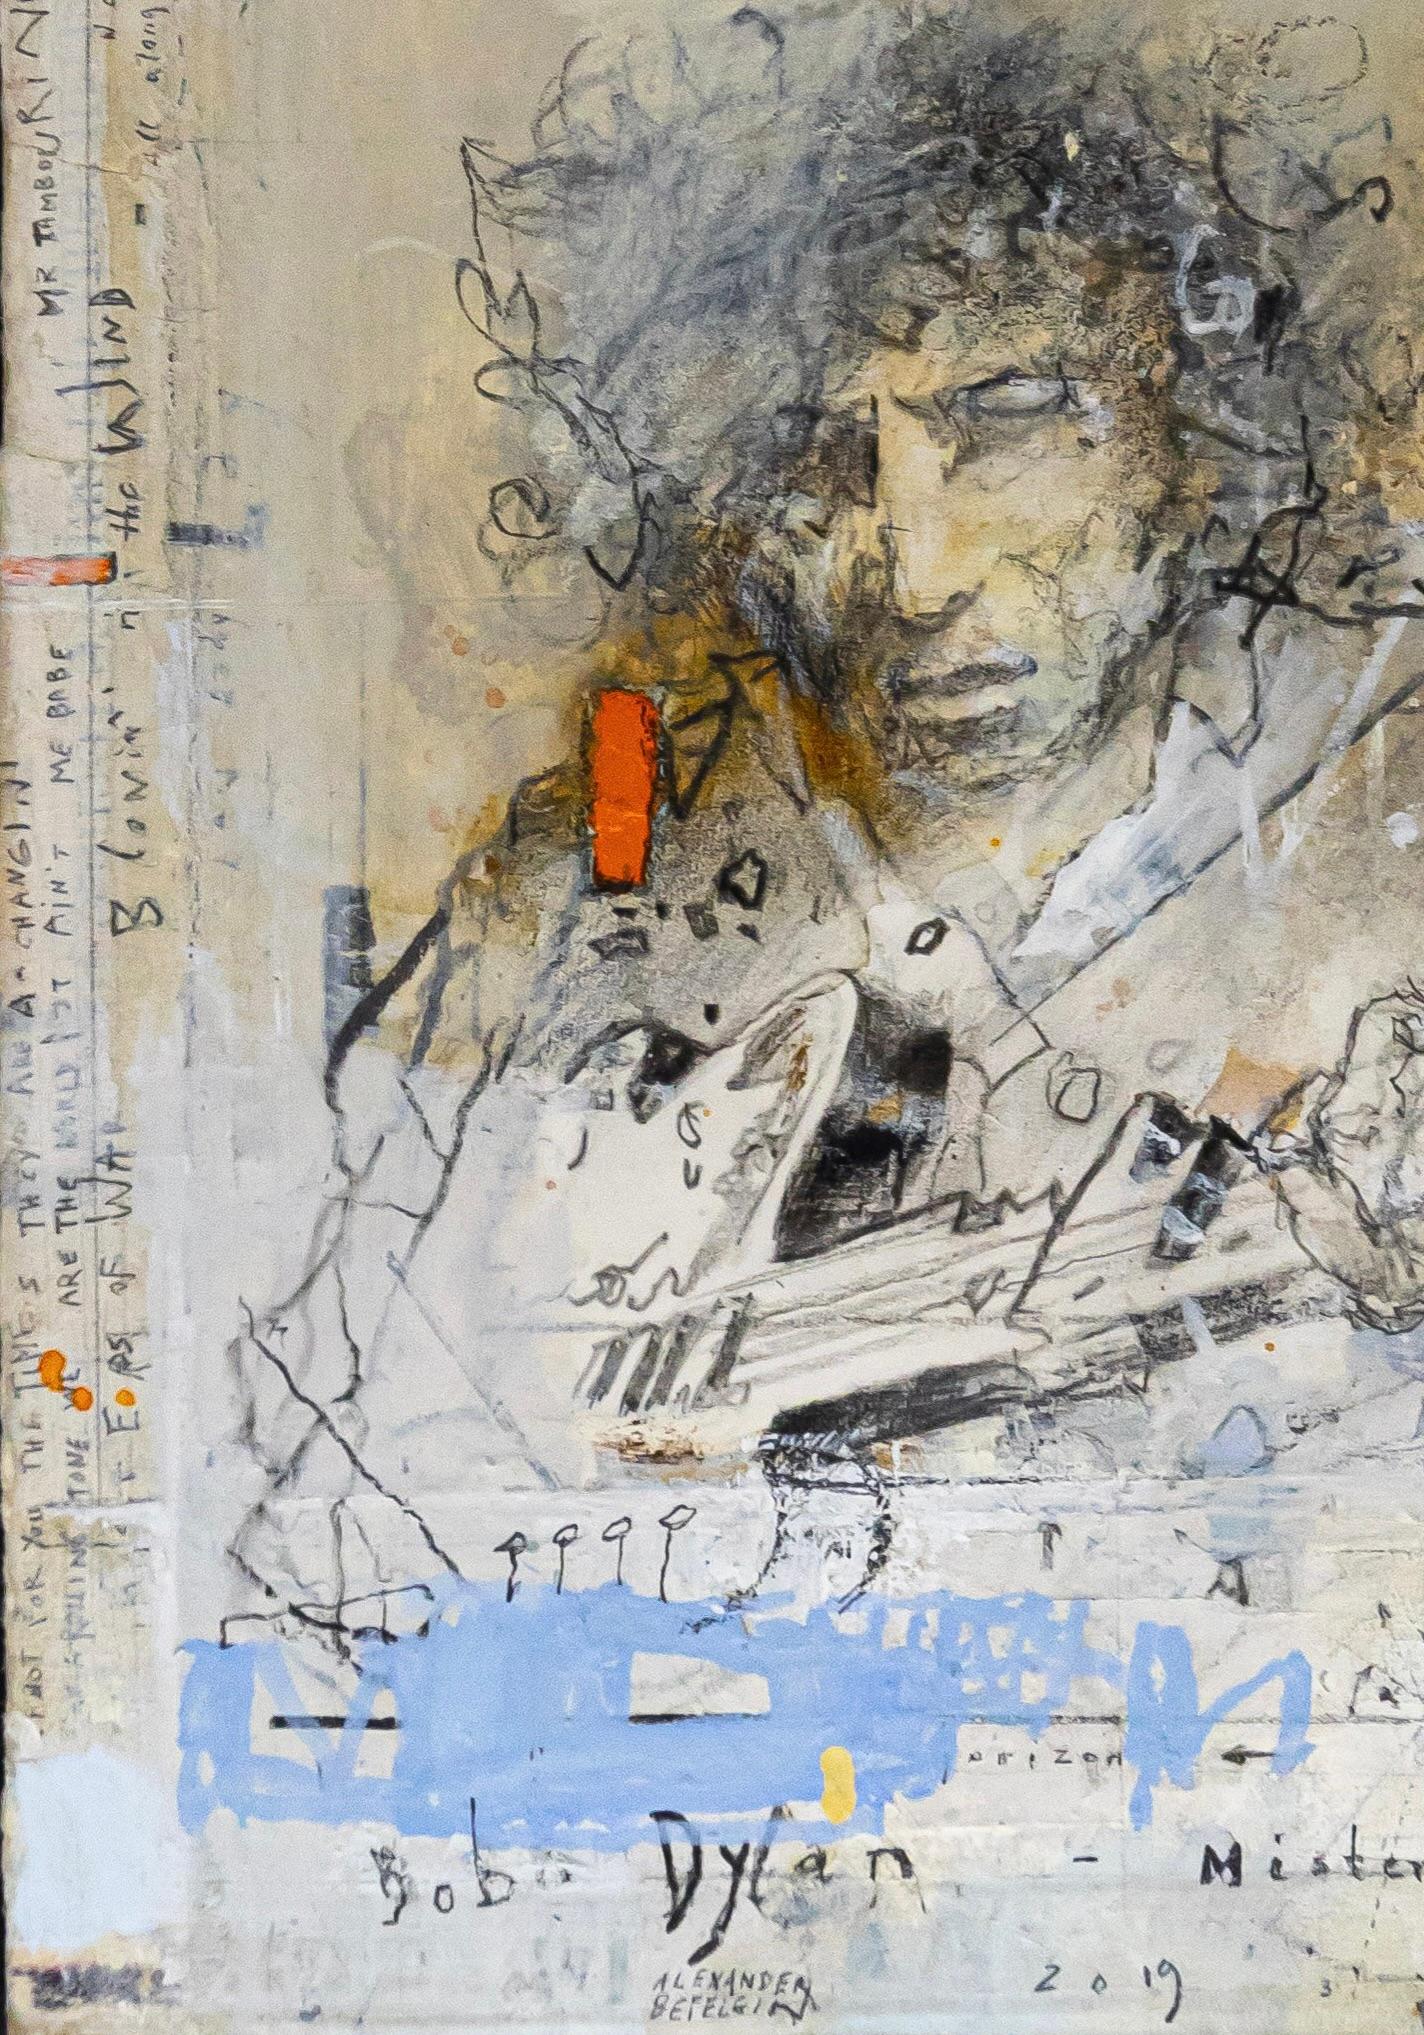 « Bob Dylan - Legends » 2019 aquarelle sur papier - musique de guitare de musicien en vente 1